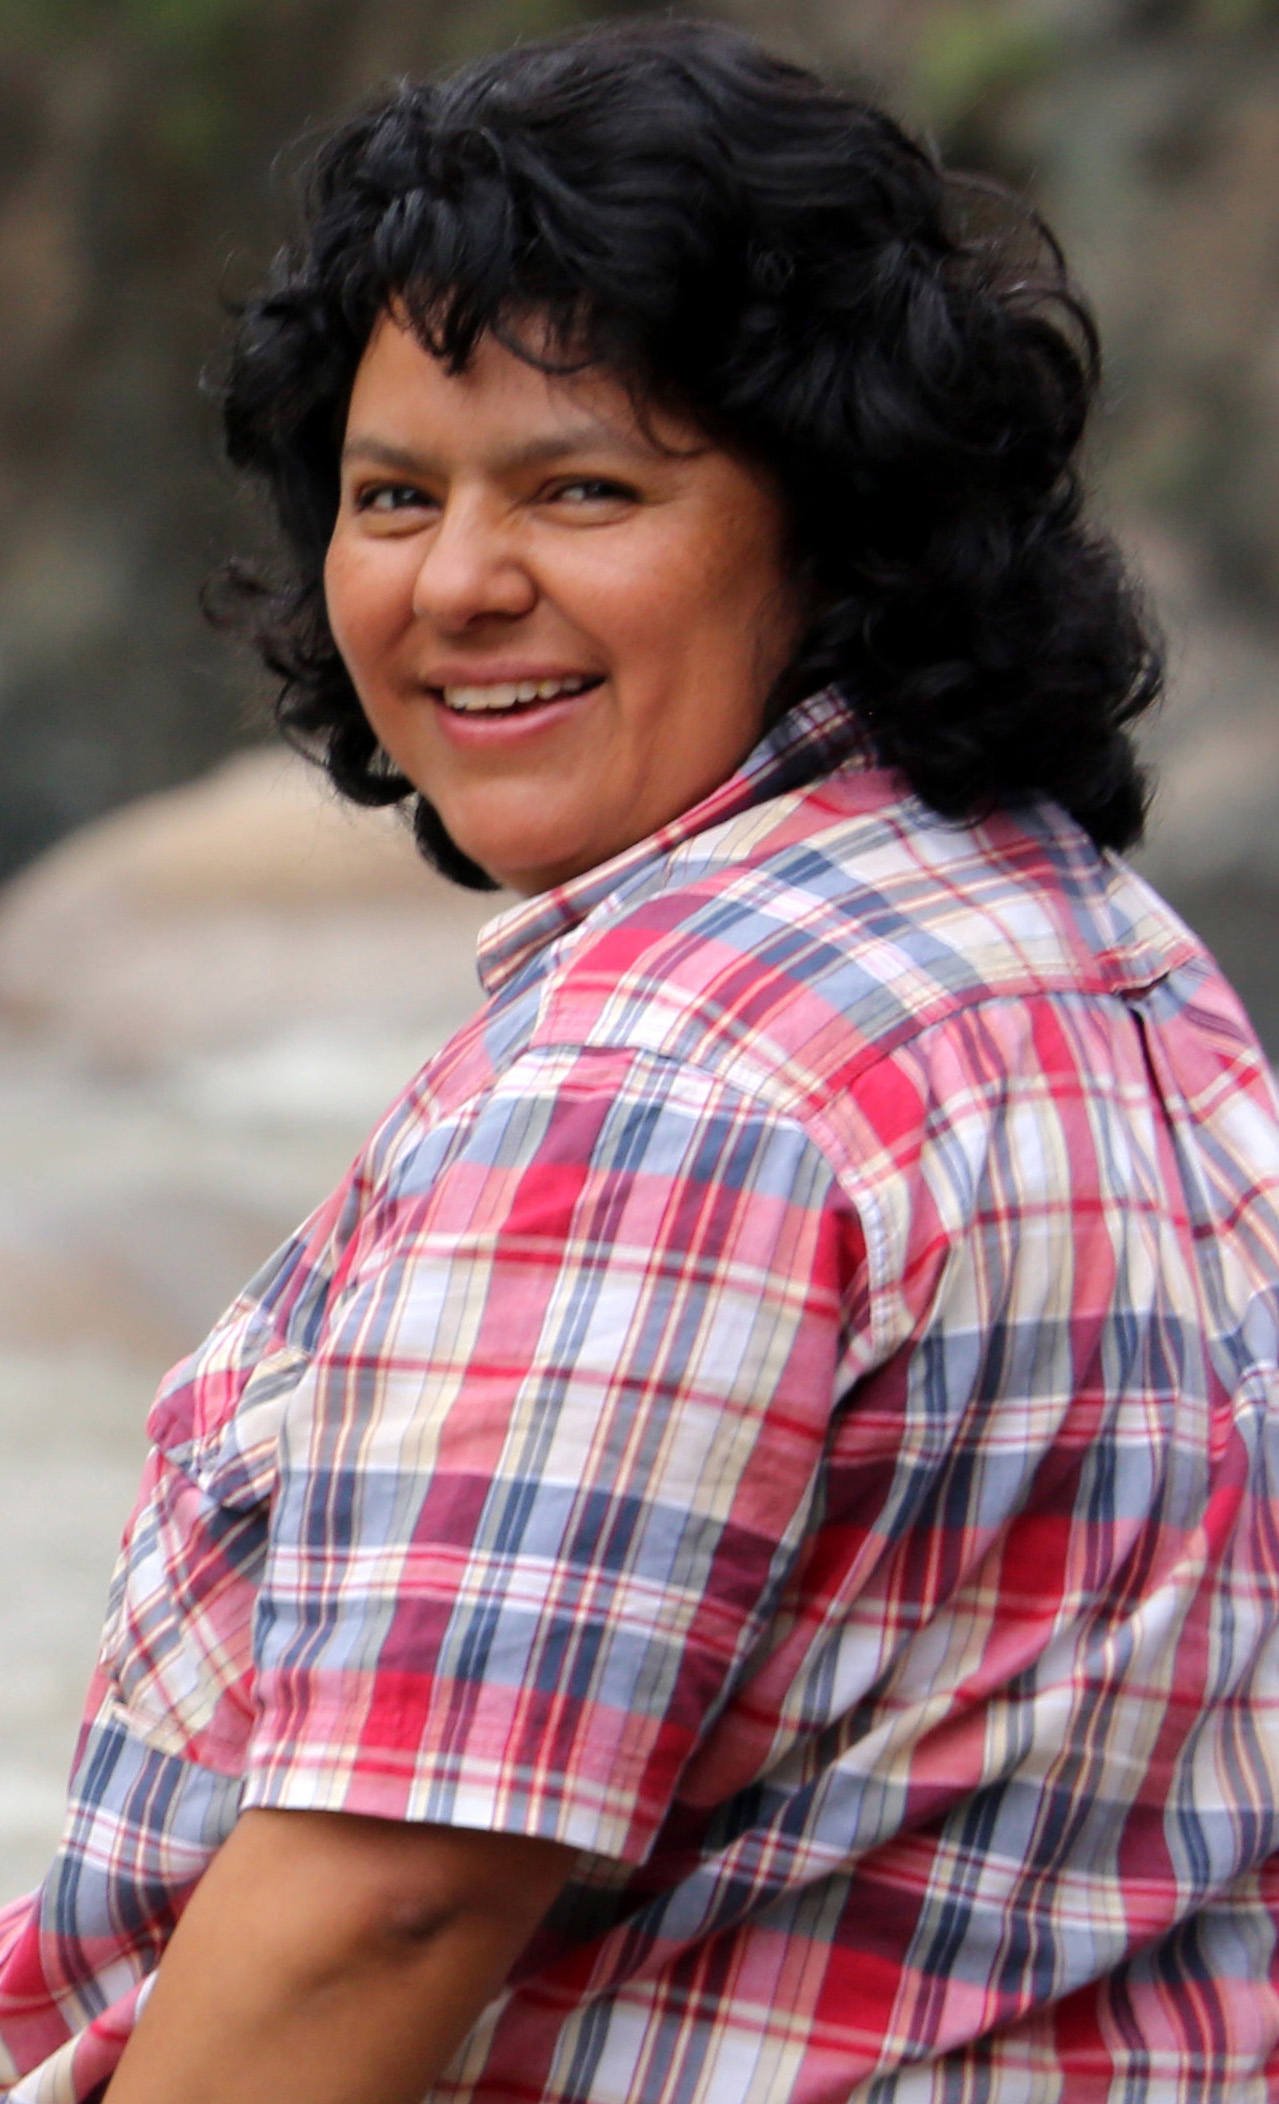 Berta Cáceres defensora de la comunidad Indígena Lenca